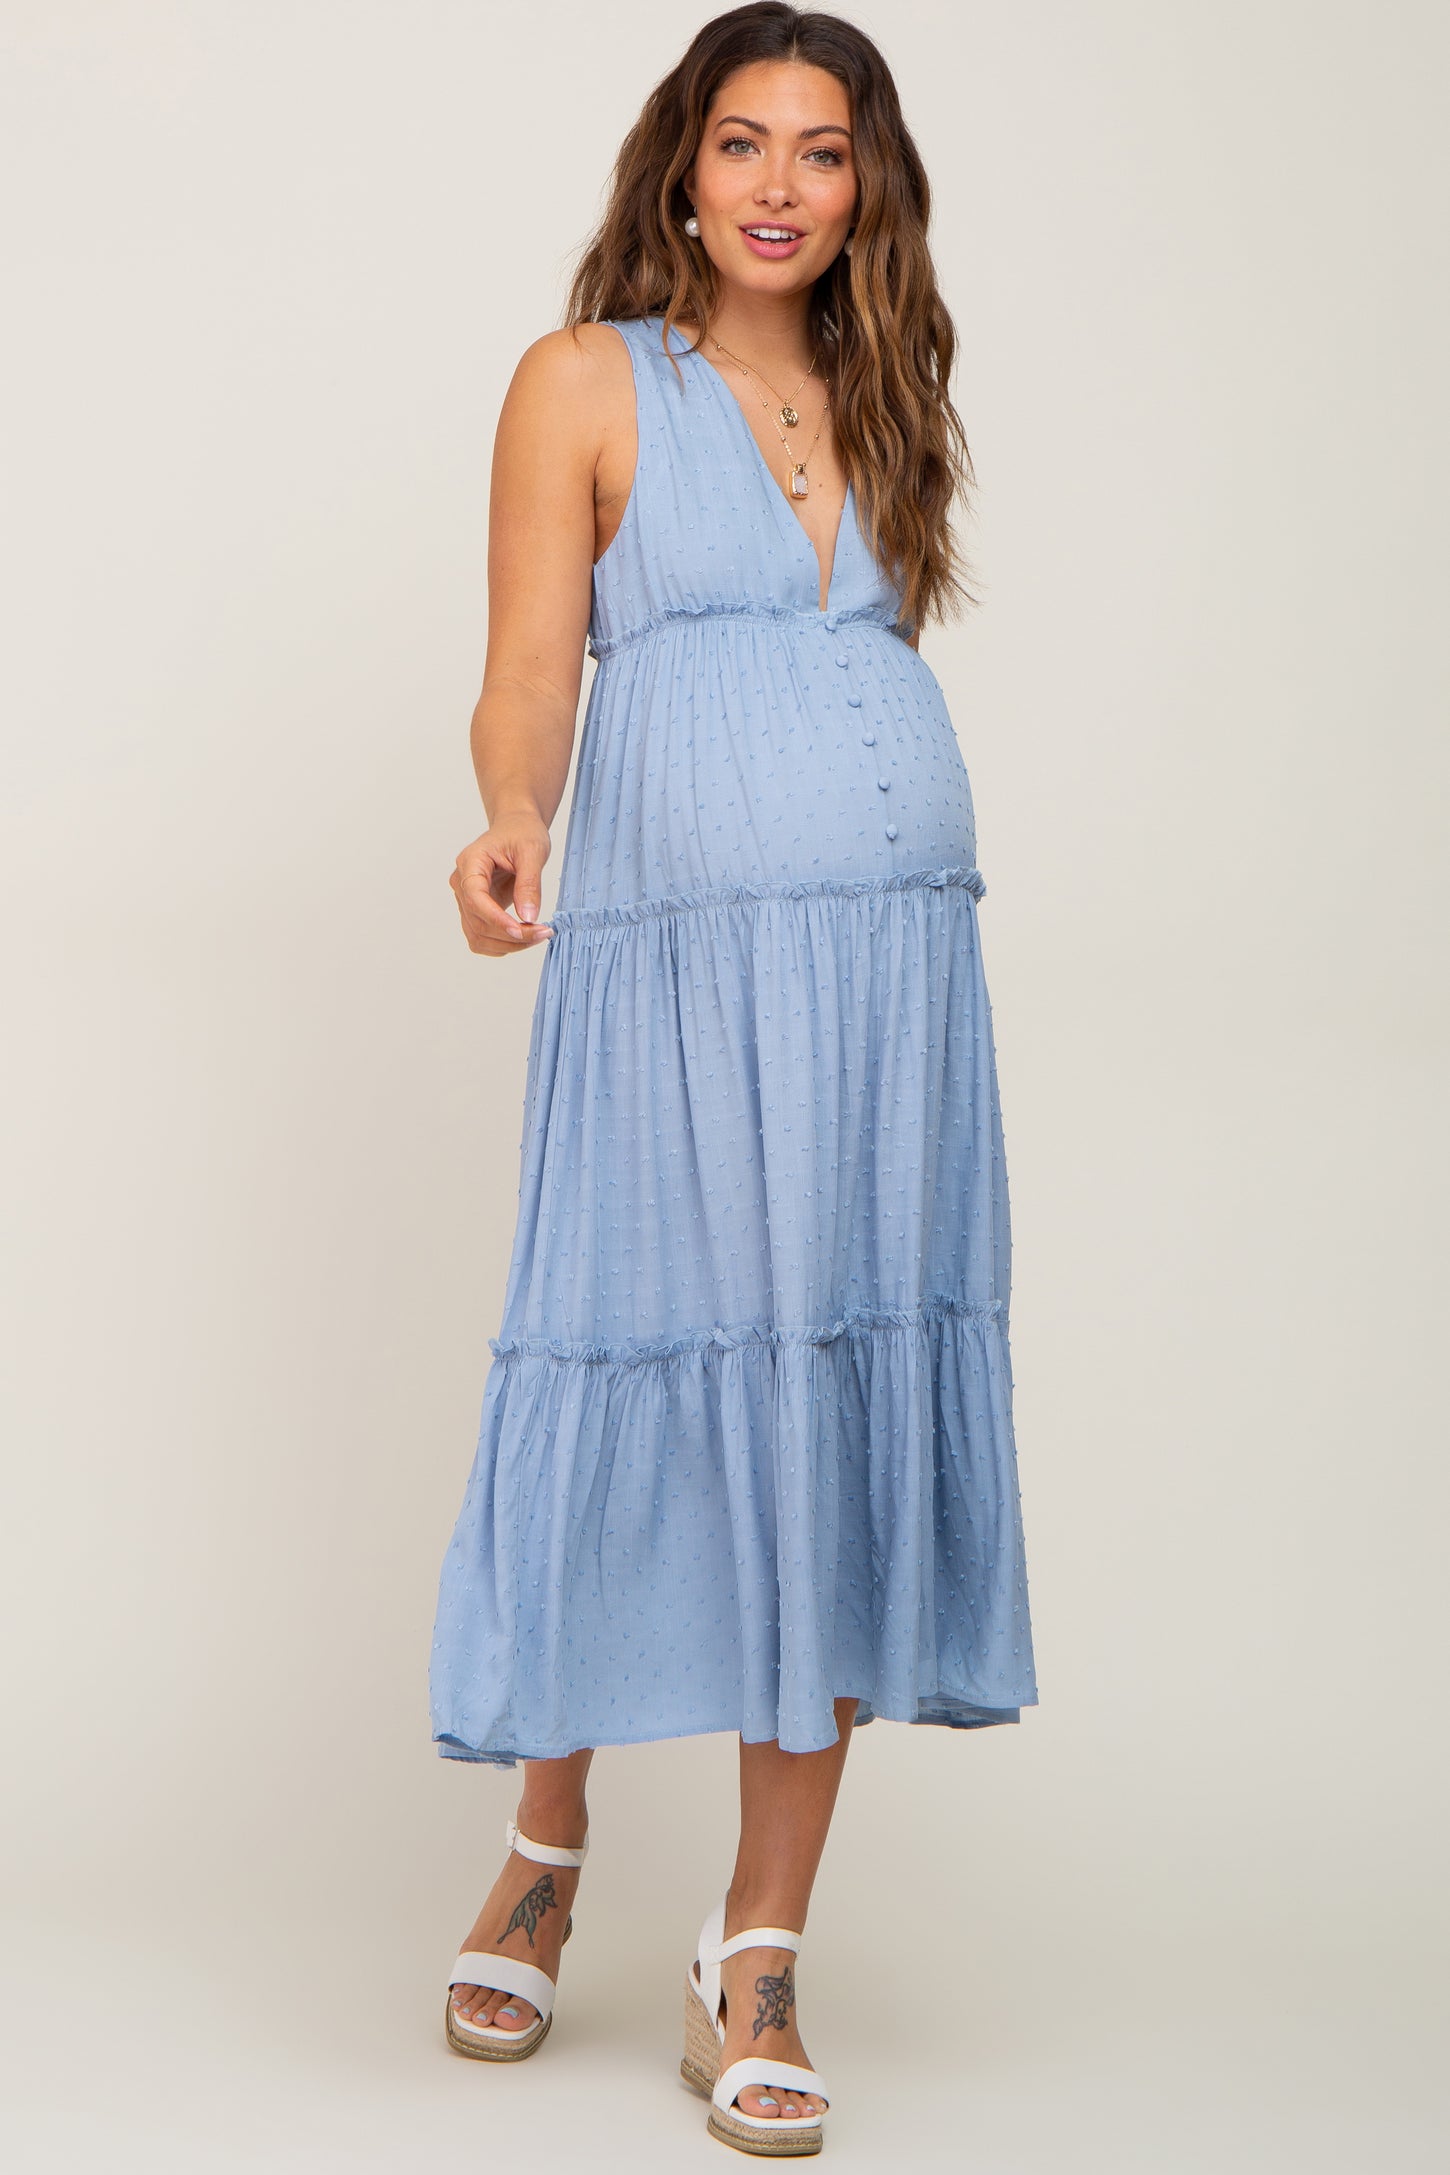 Light Blue Swiss Dot Sleeveless Tiered Maternity Midi Dress – PinkBlush